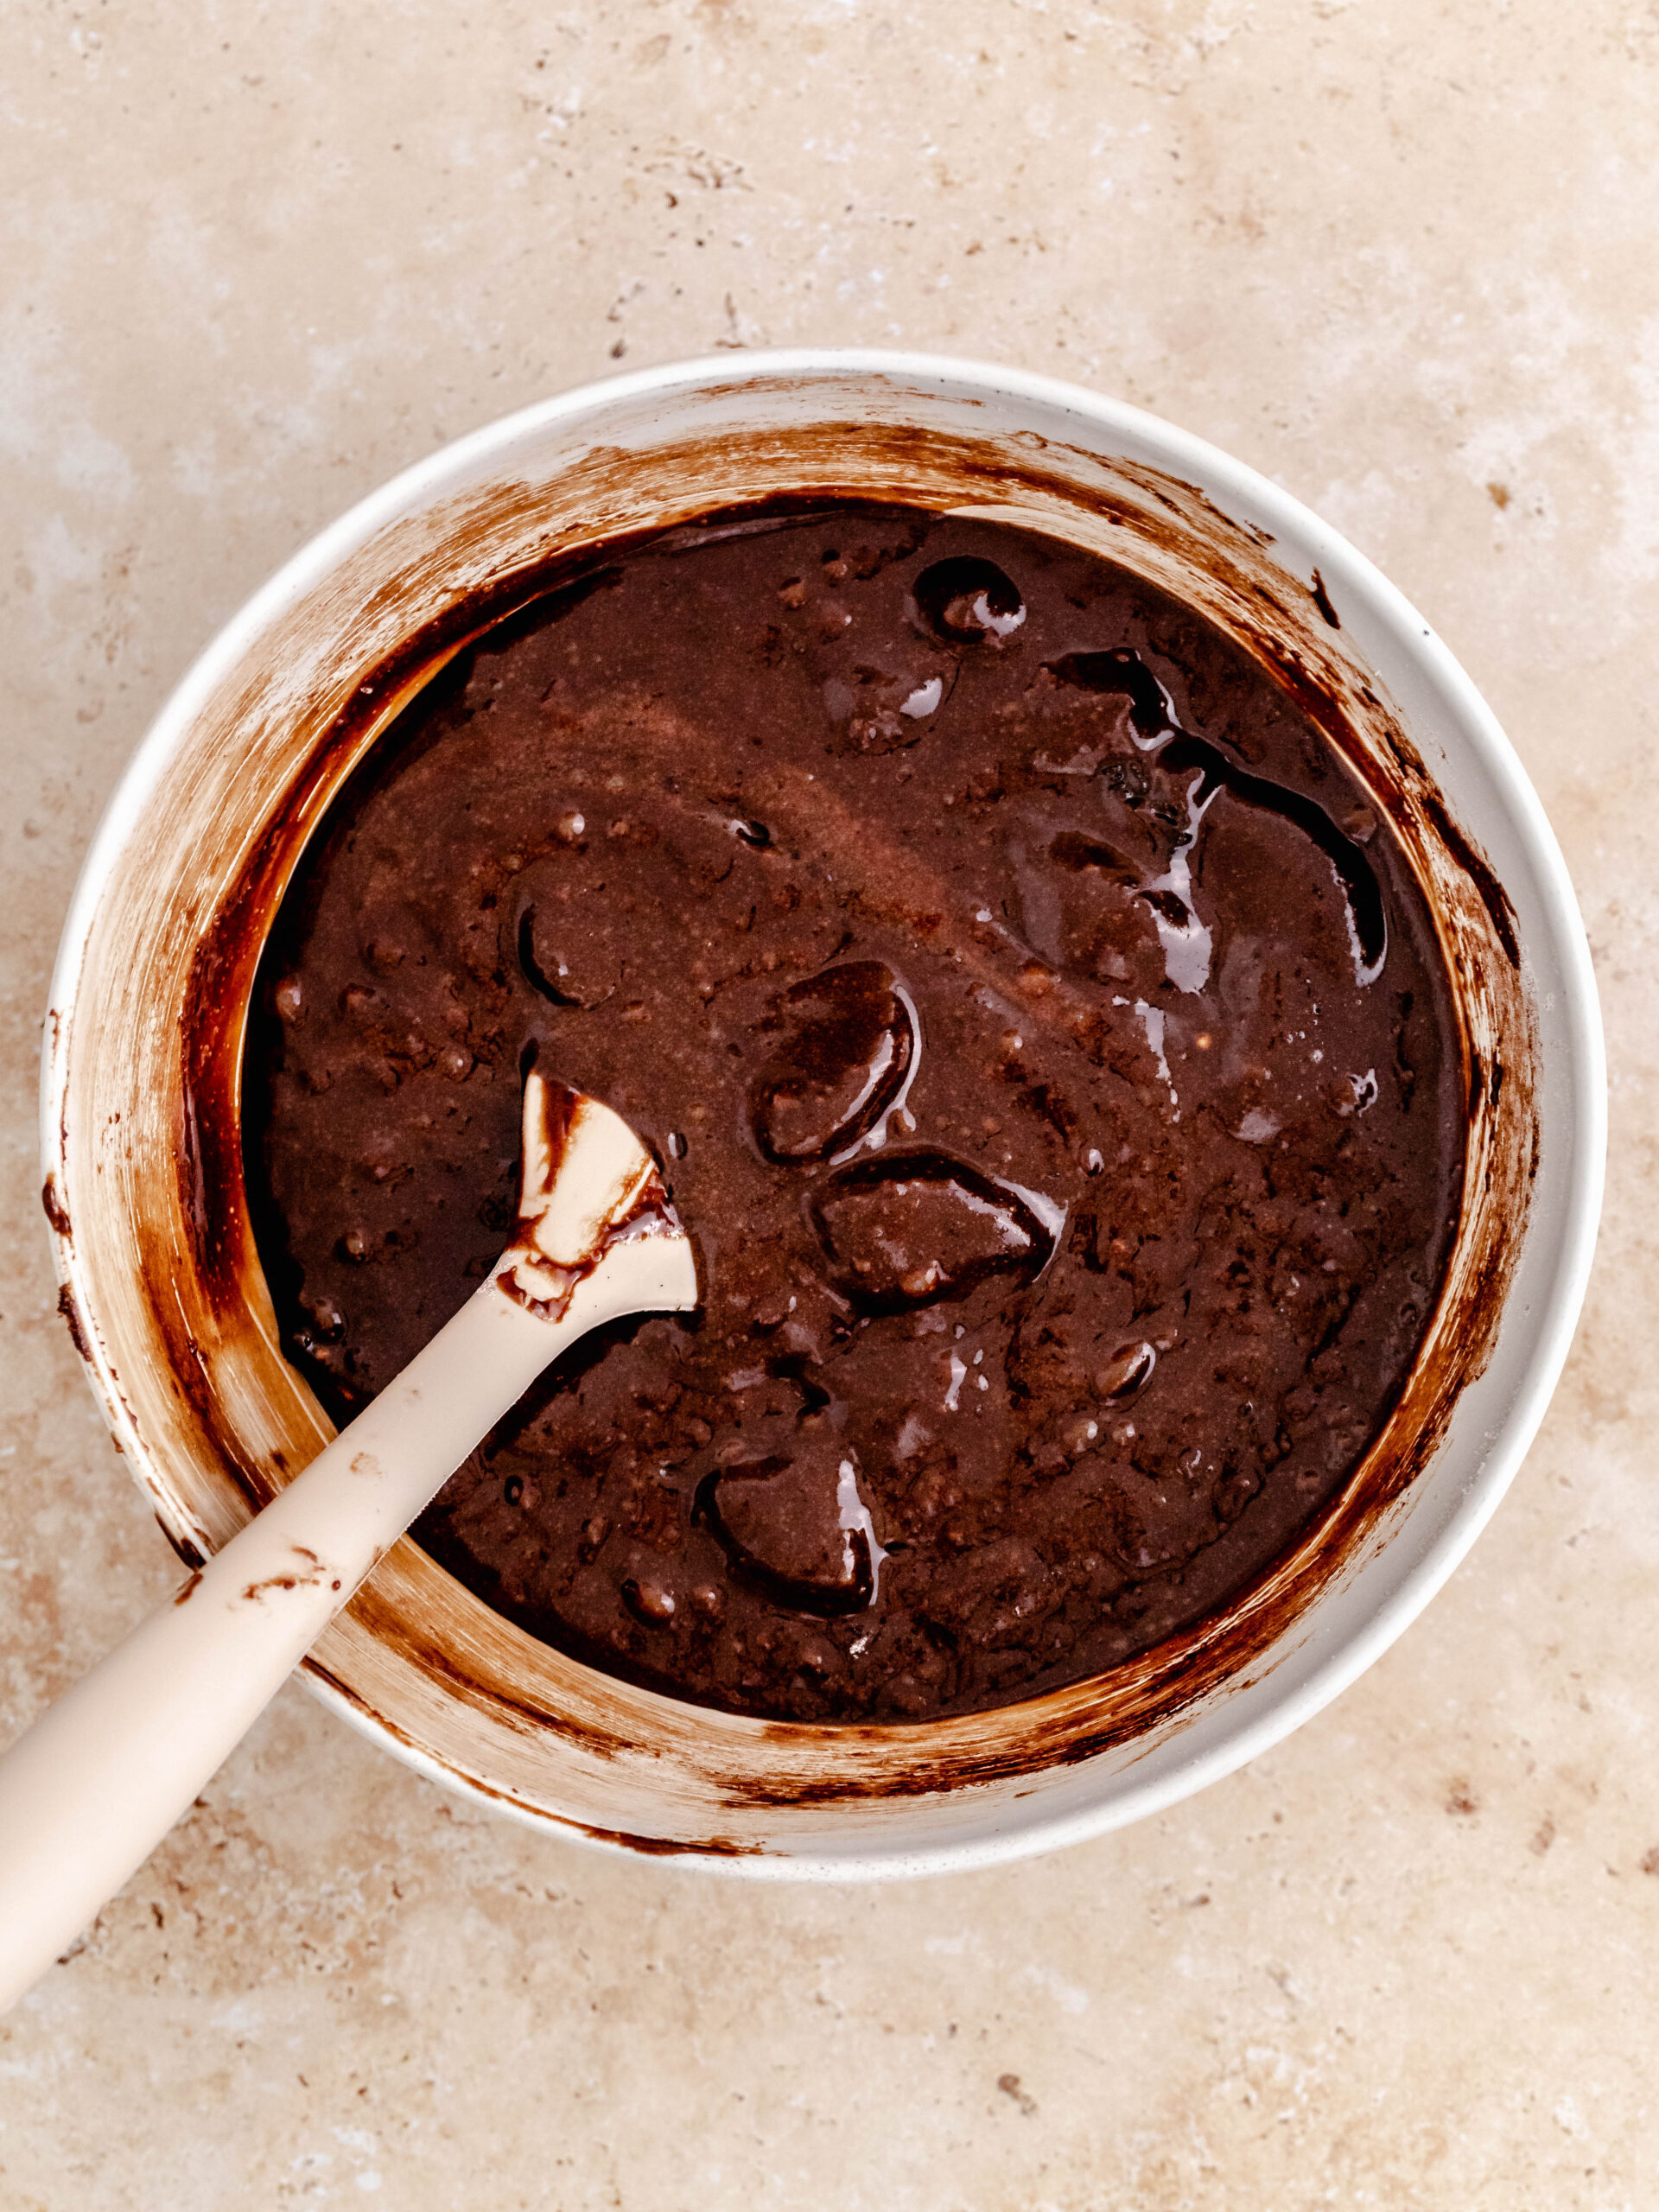 Oreo brownie dej i en skål